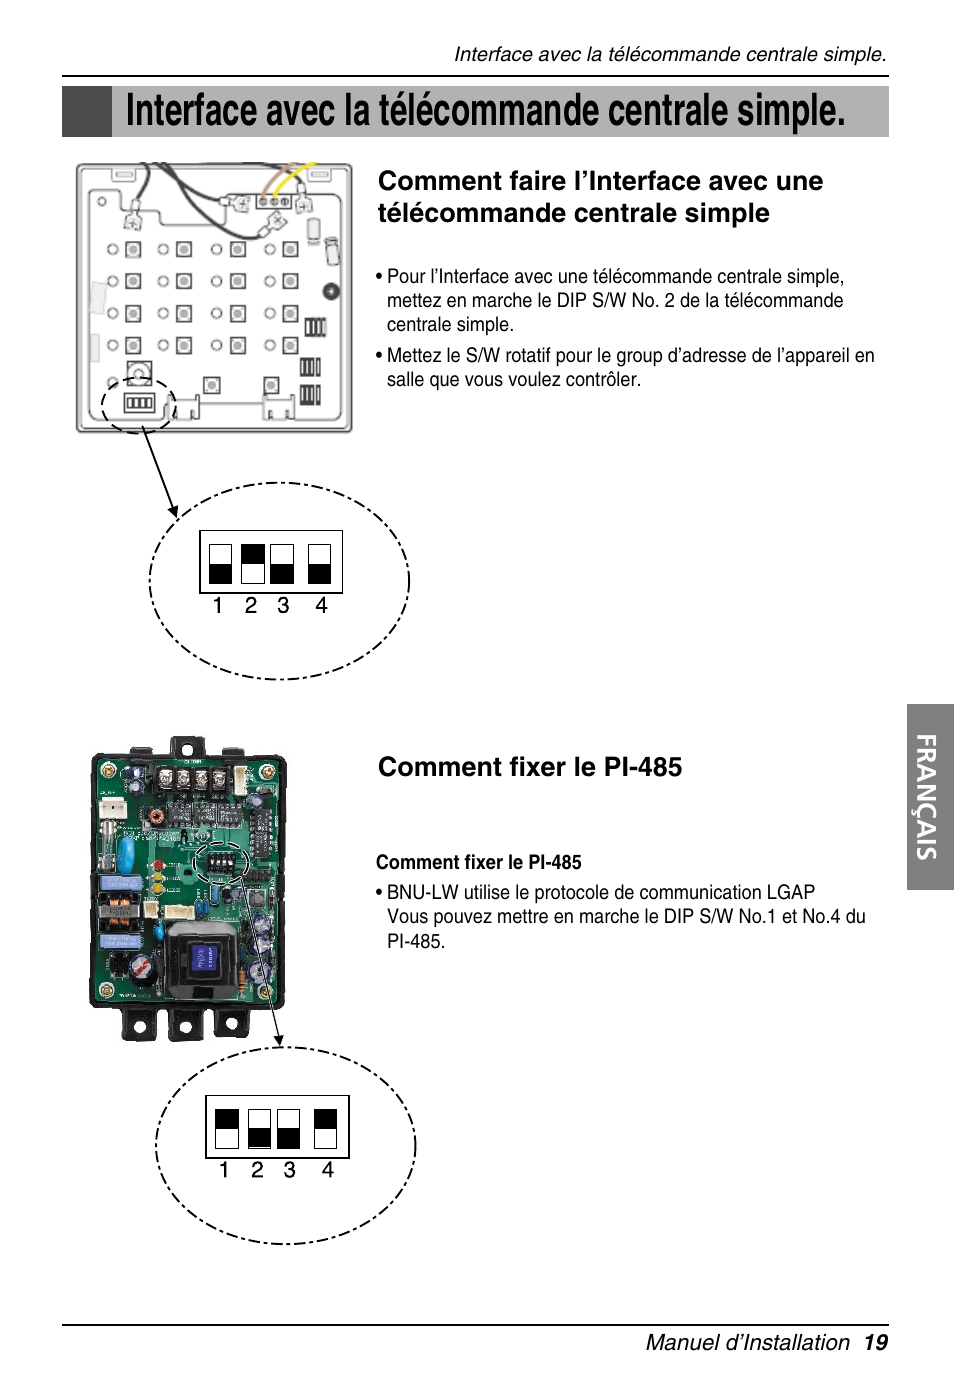 Interface avec la télécommande centrale simple | LG PQNFB16A1 User Manual | Page 103 / 169